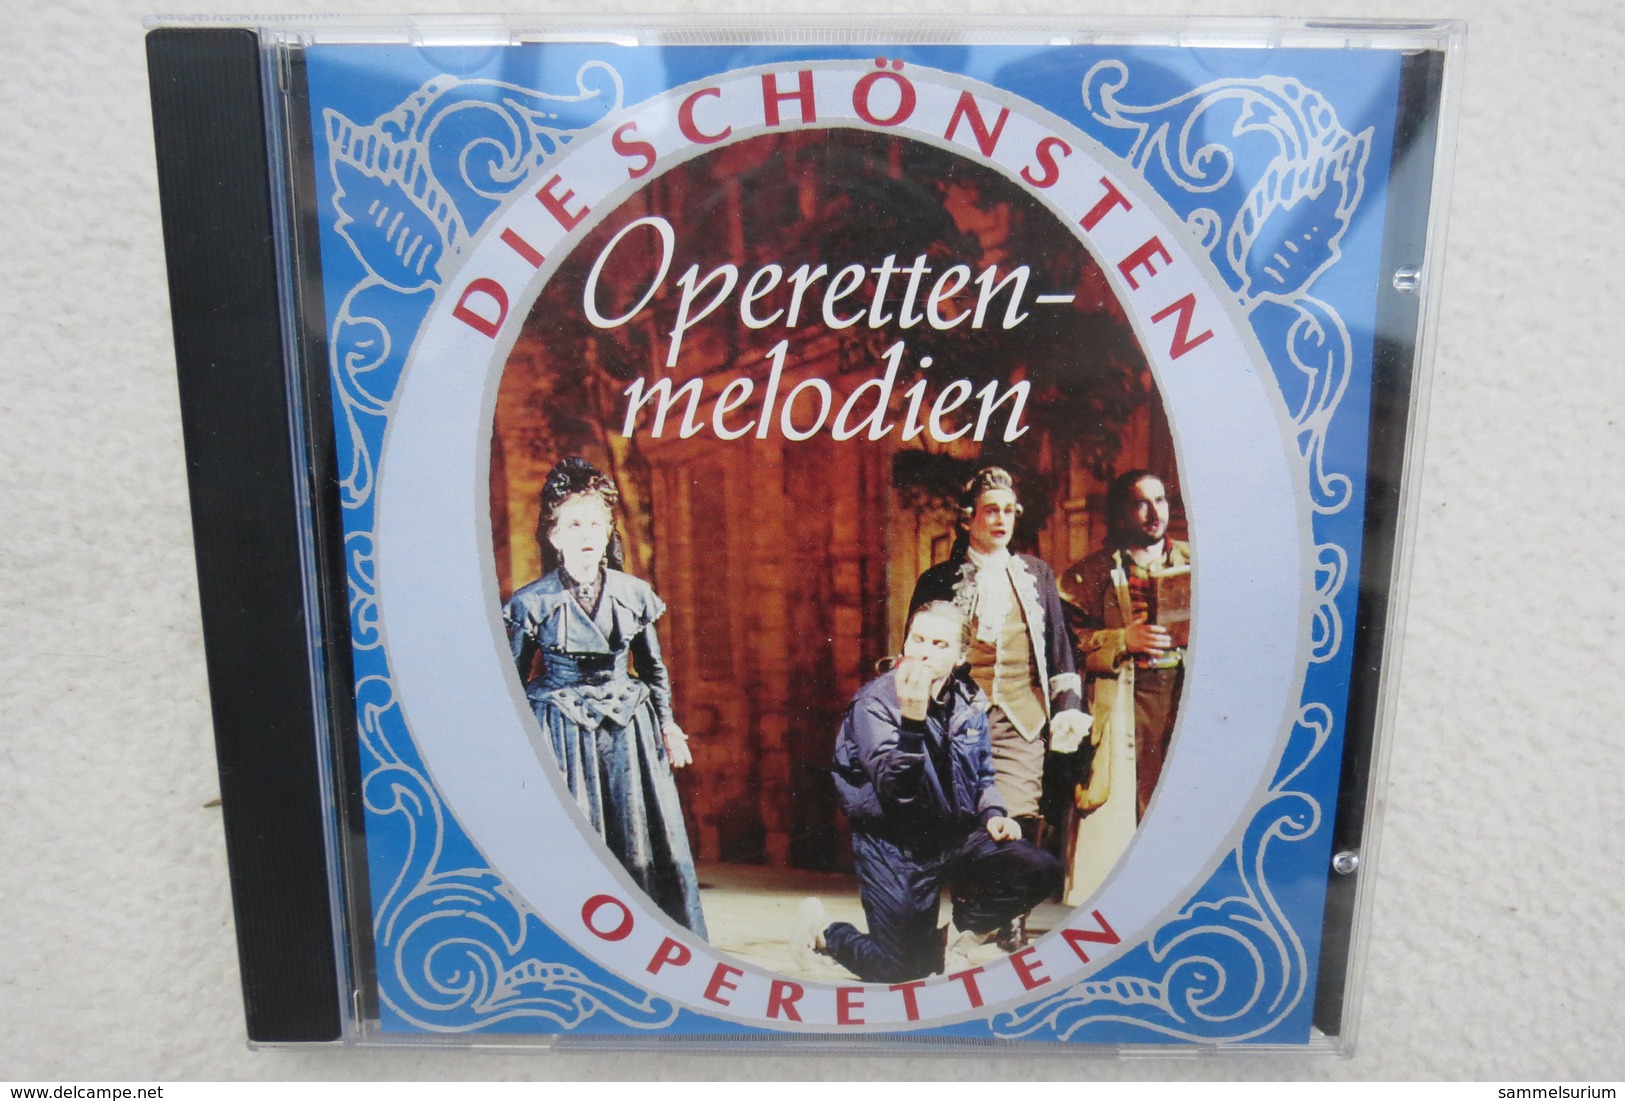 CD "Die Schönsten Operetten" Operettenmelodien - Opere